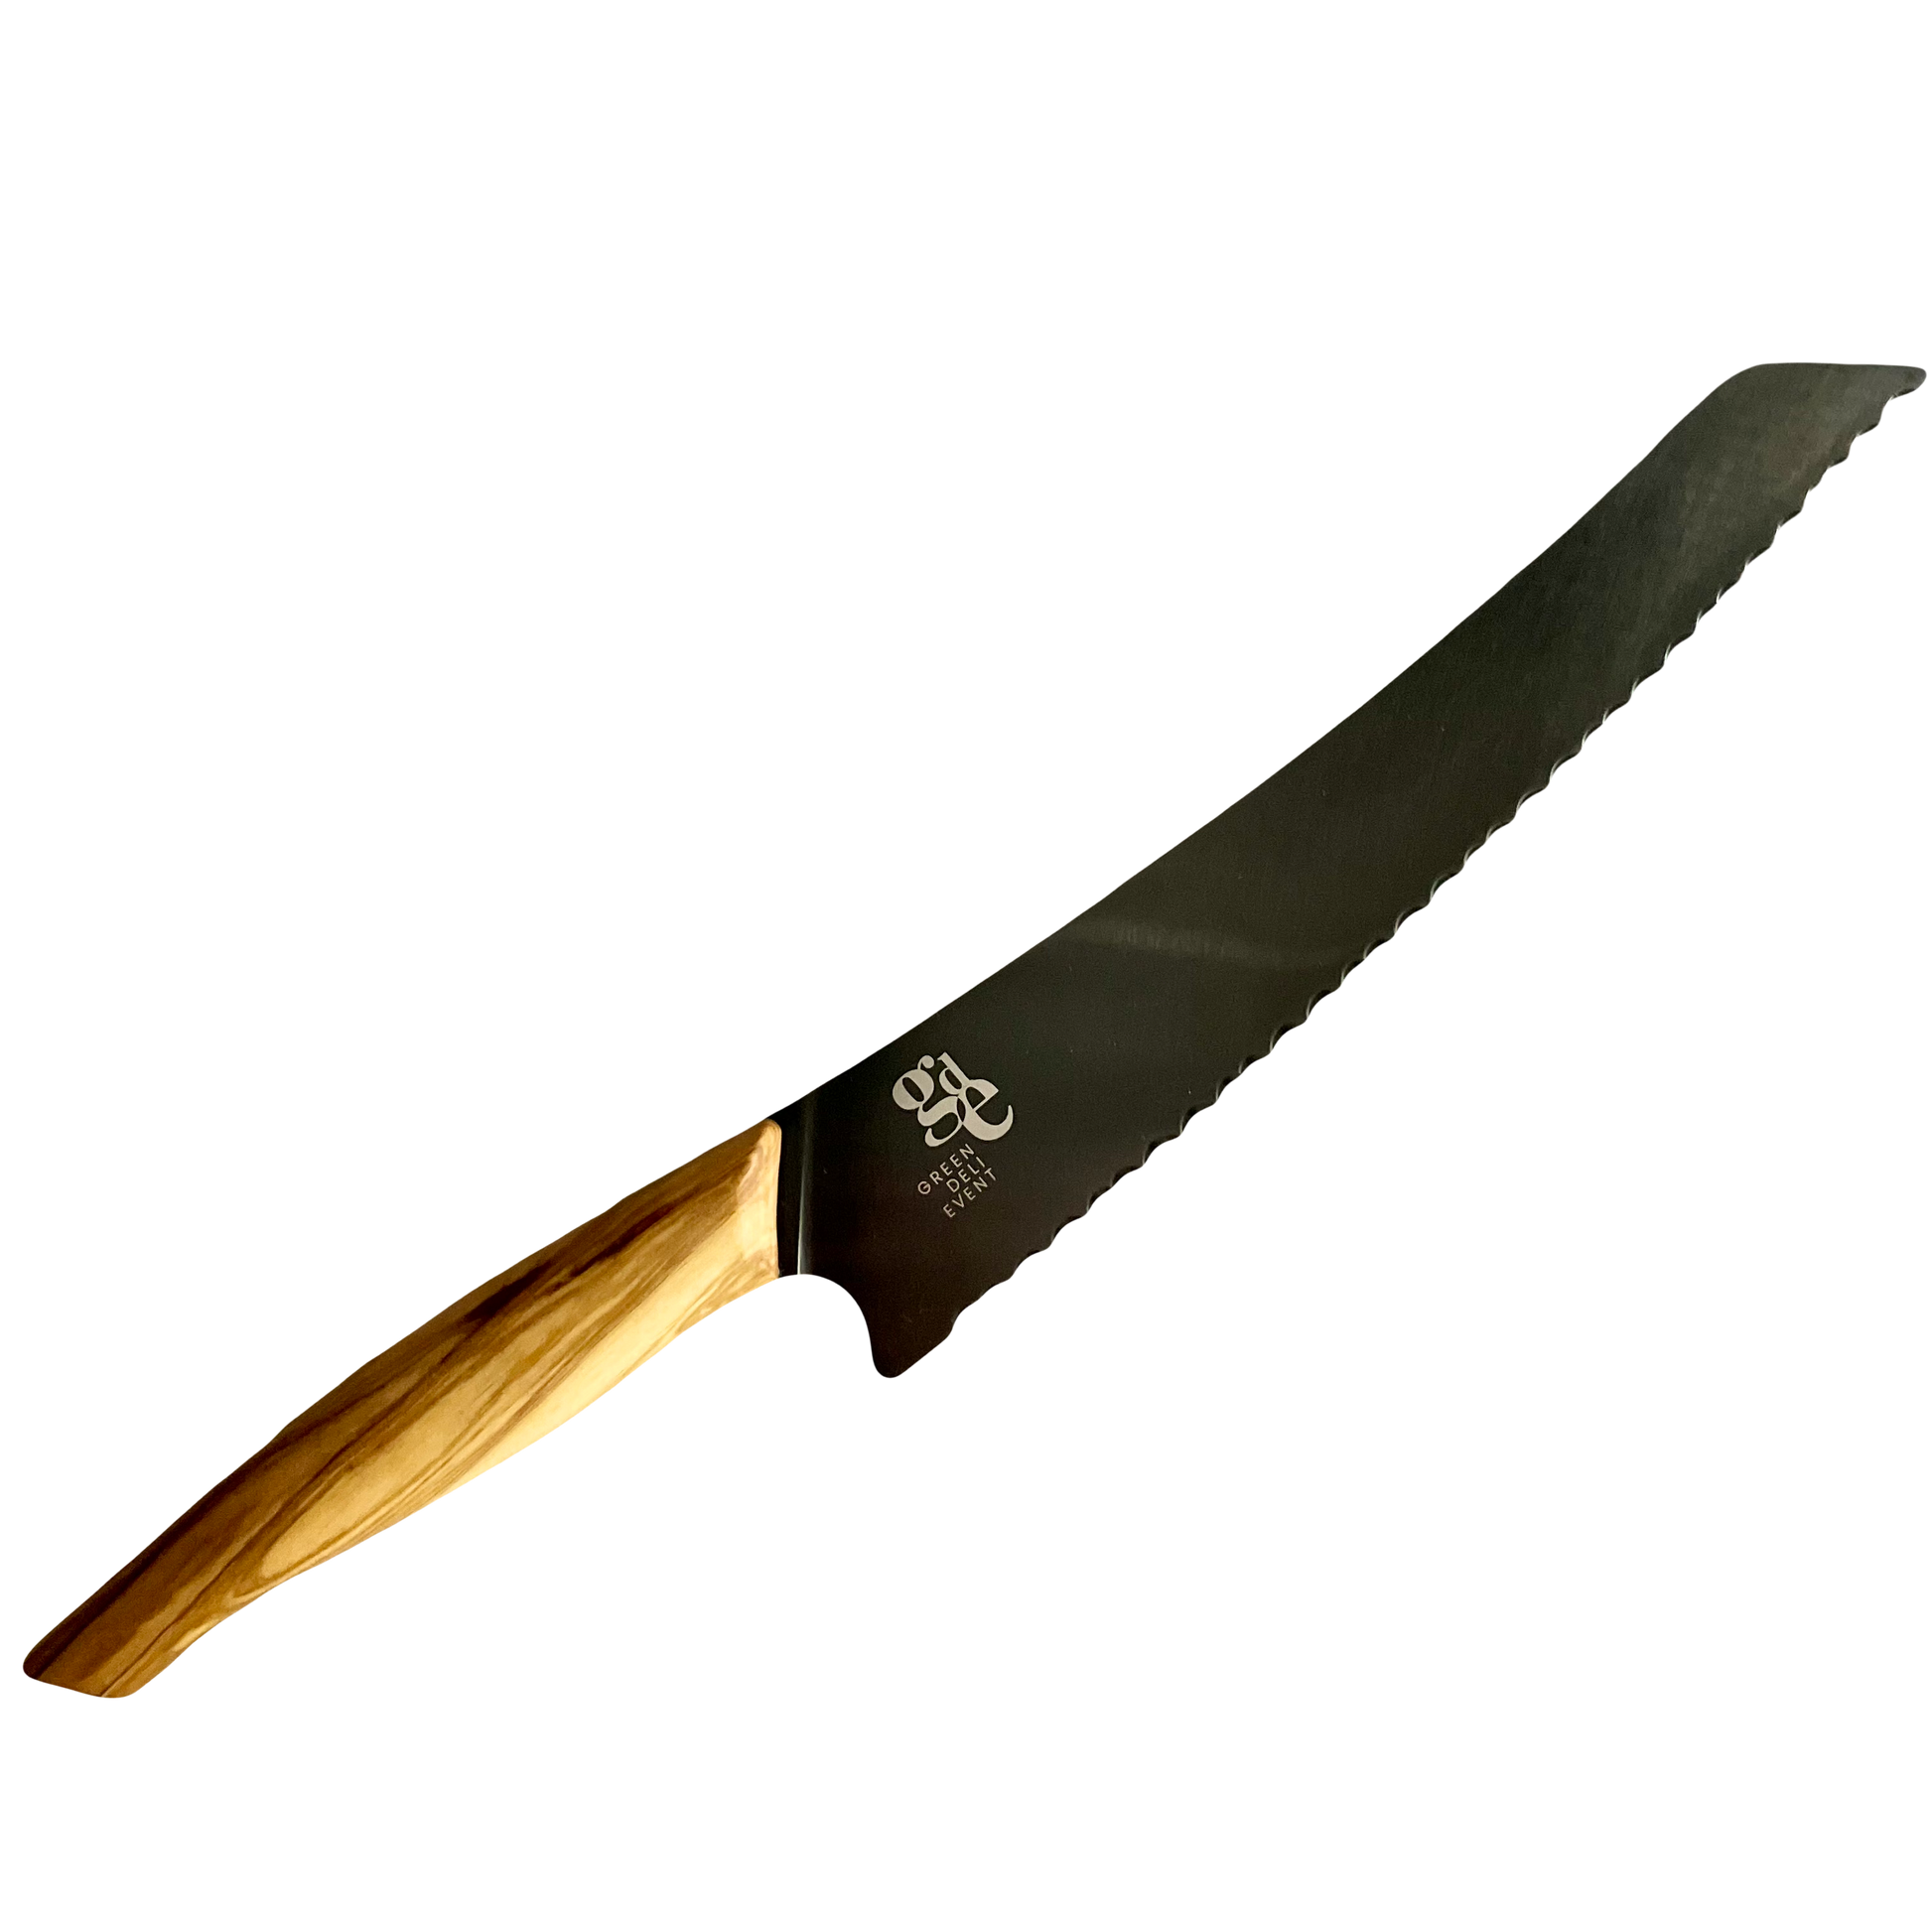 Ein Brotmesser mit schwarzer Klinge und einem Olivenholz Griff - Klingenlänge 26,5cm